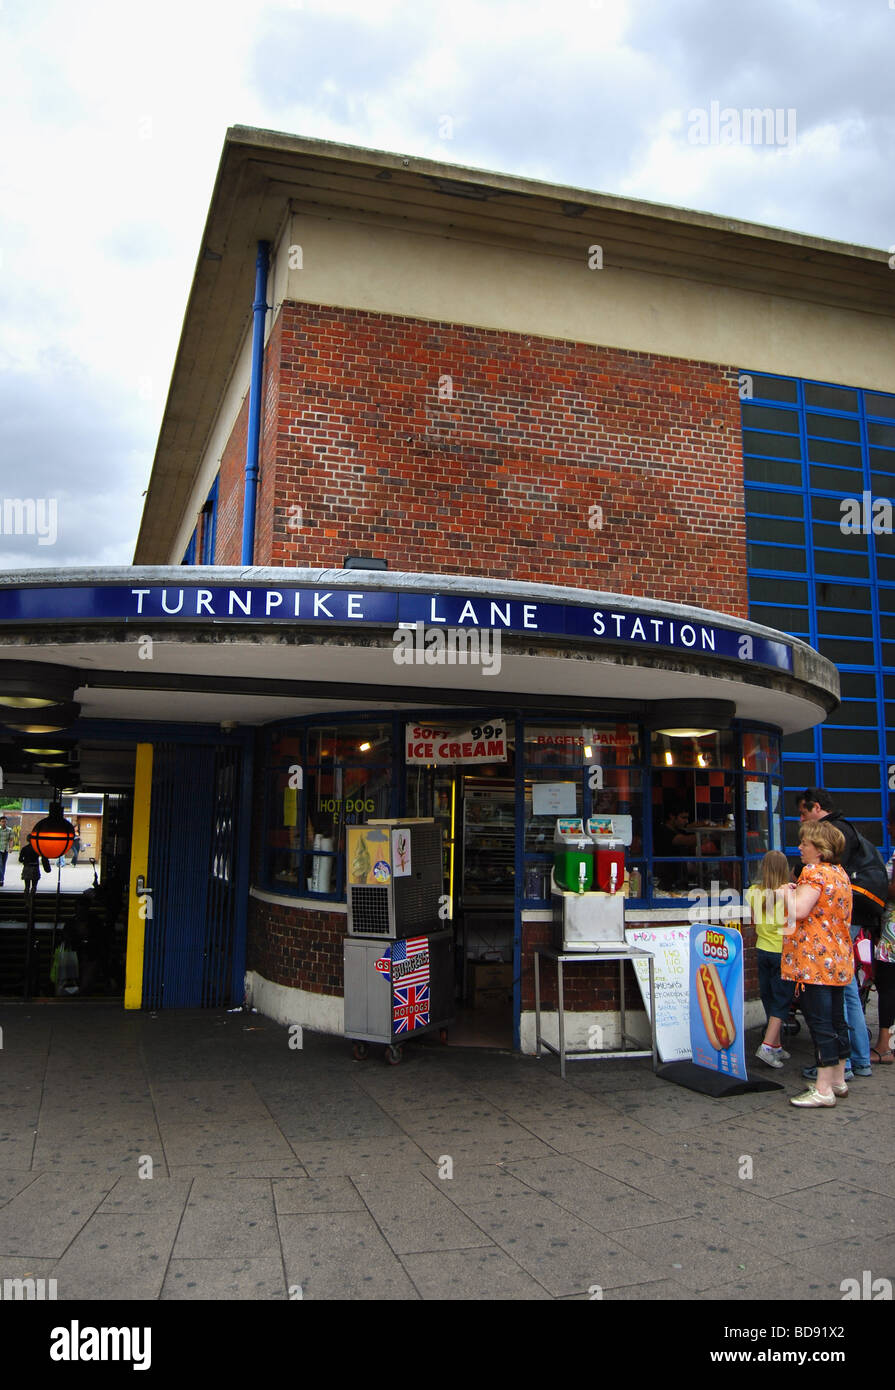 Turnpike Lane Underground Station, London Stock Photo